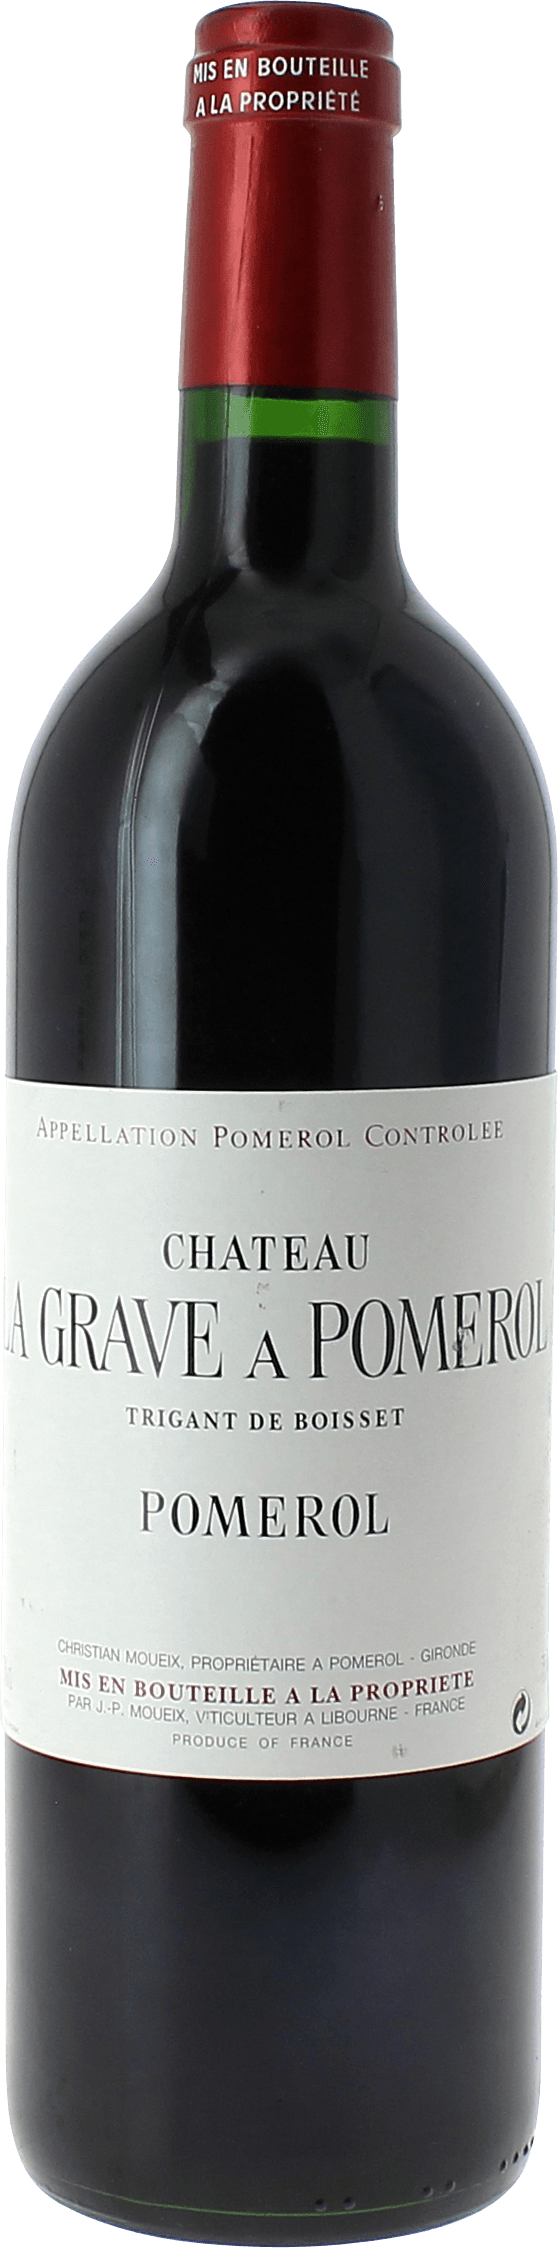 La grave trigant de boisset 1996  Pomerol, Bordeaux rouge